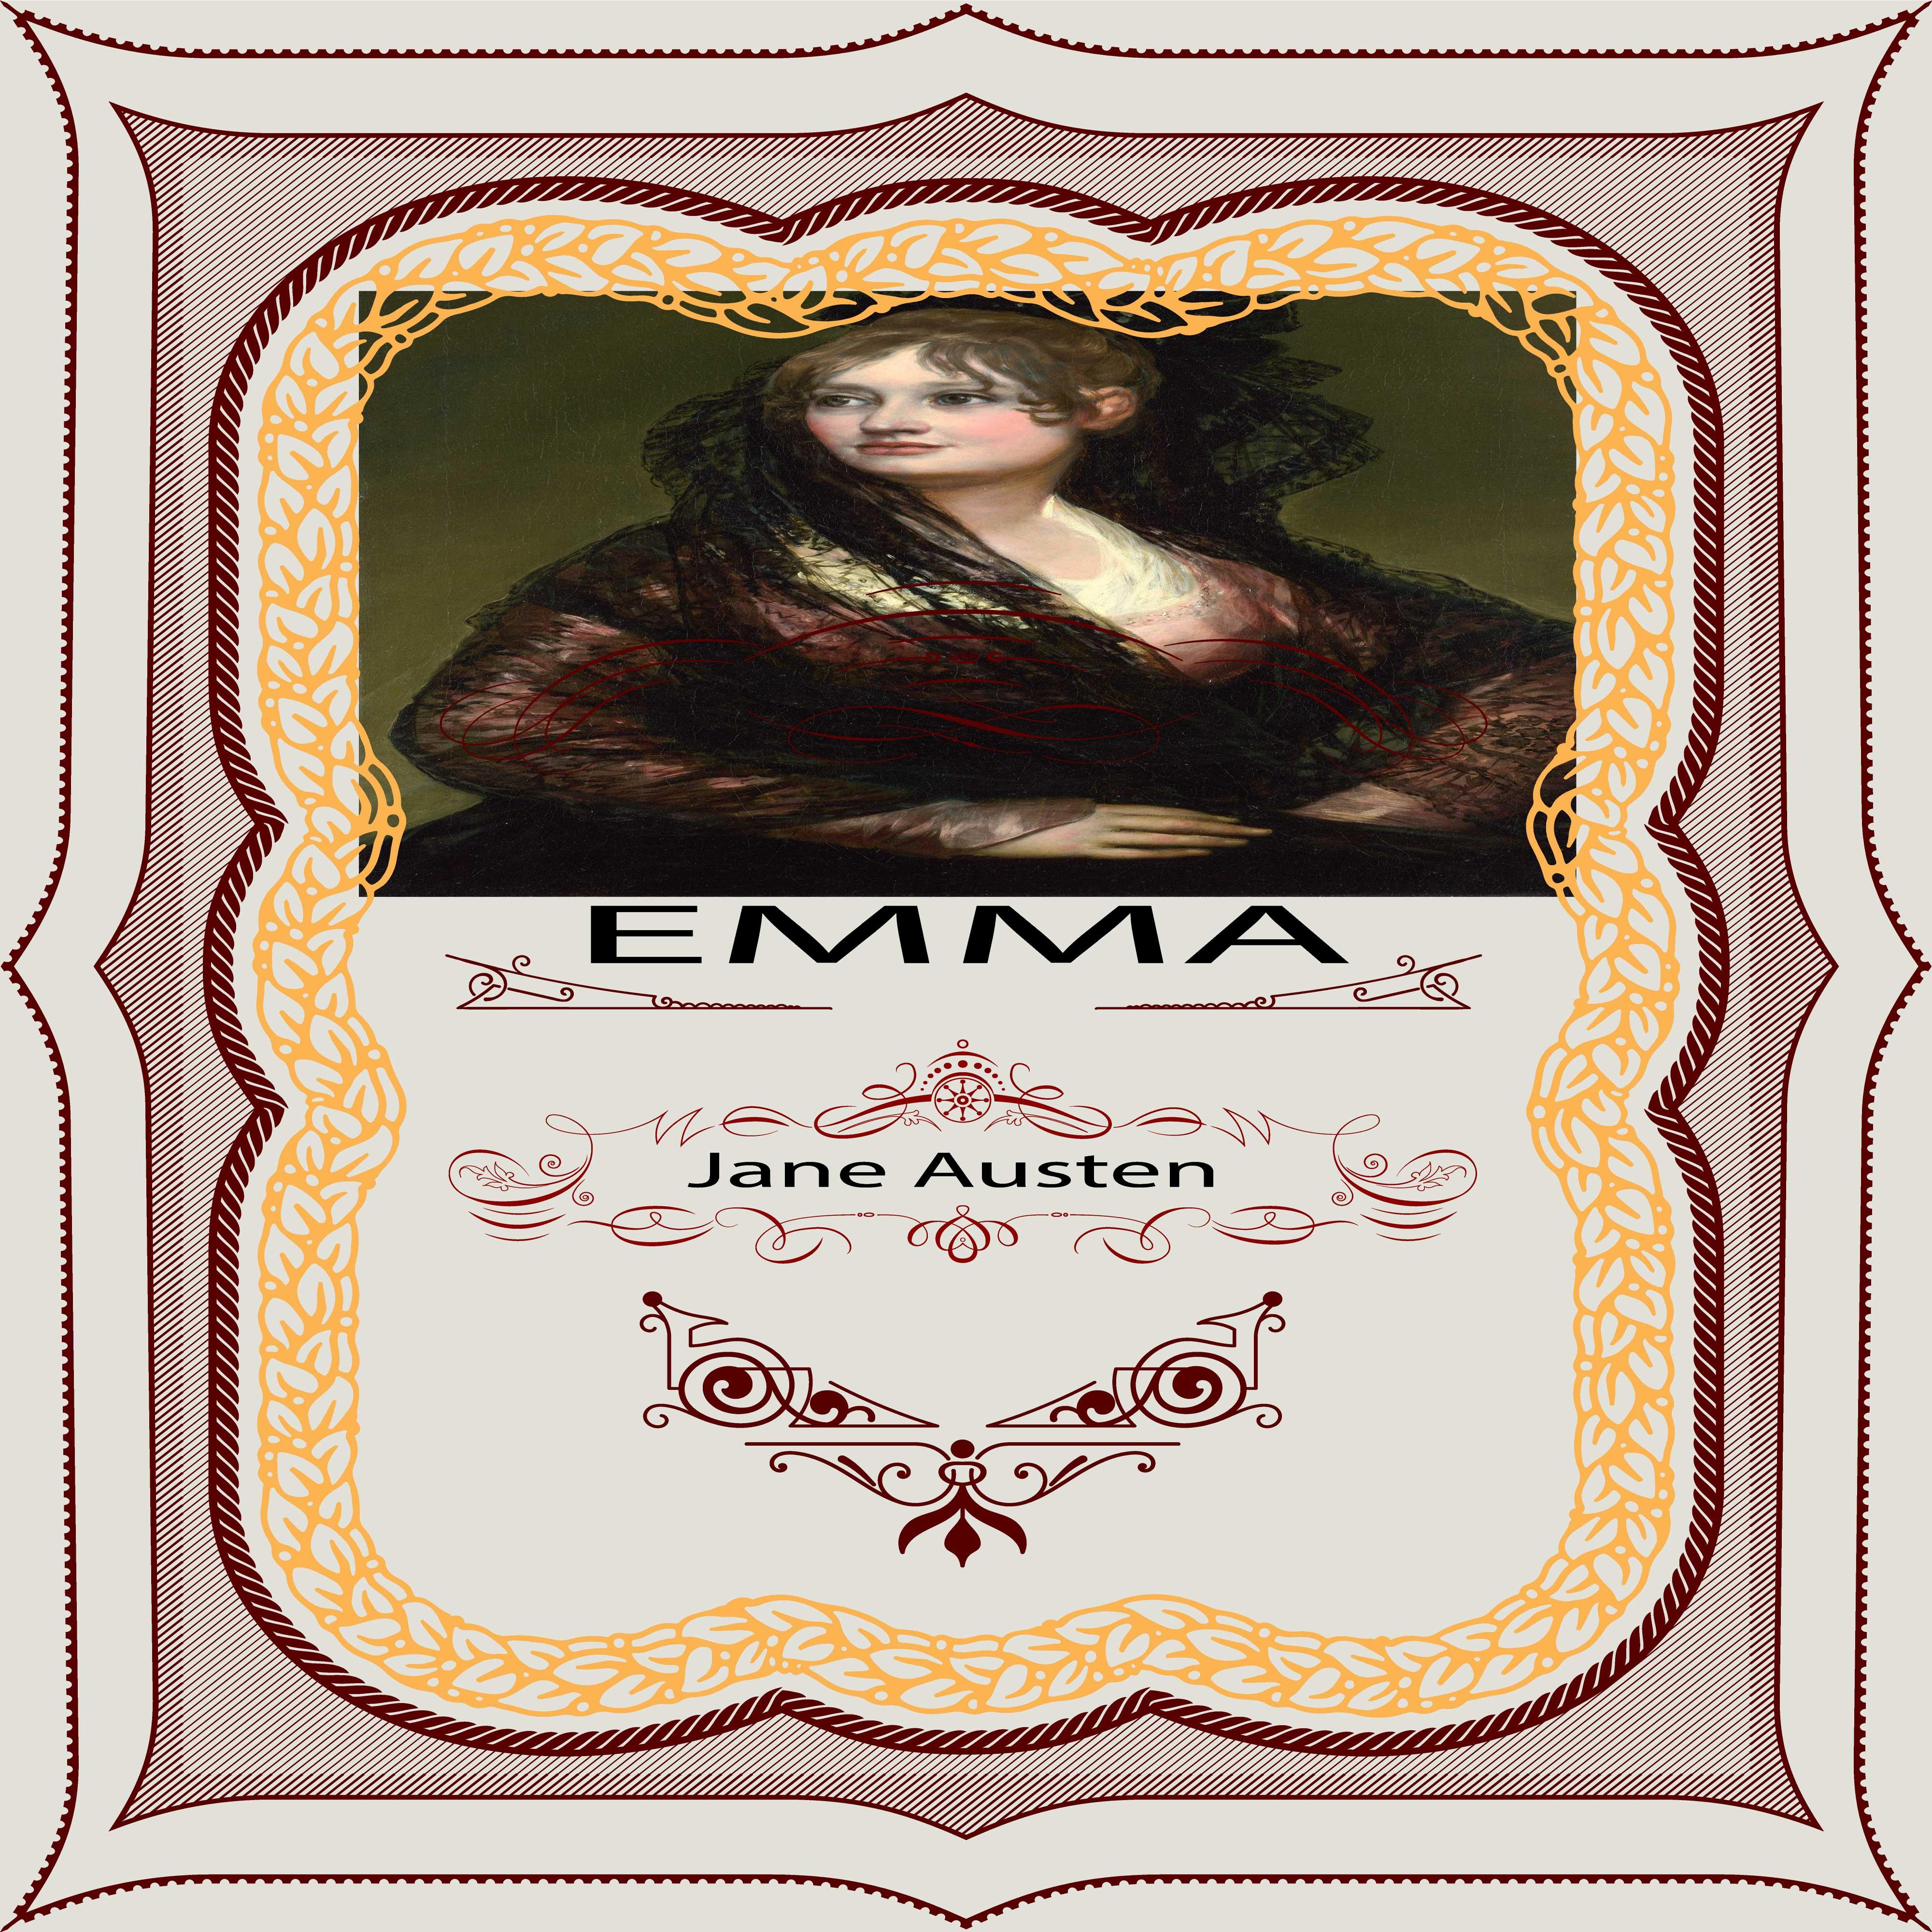 Jane Austen: Emma, Pt. 2, Chapter 7